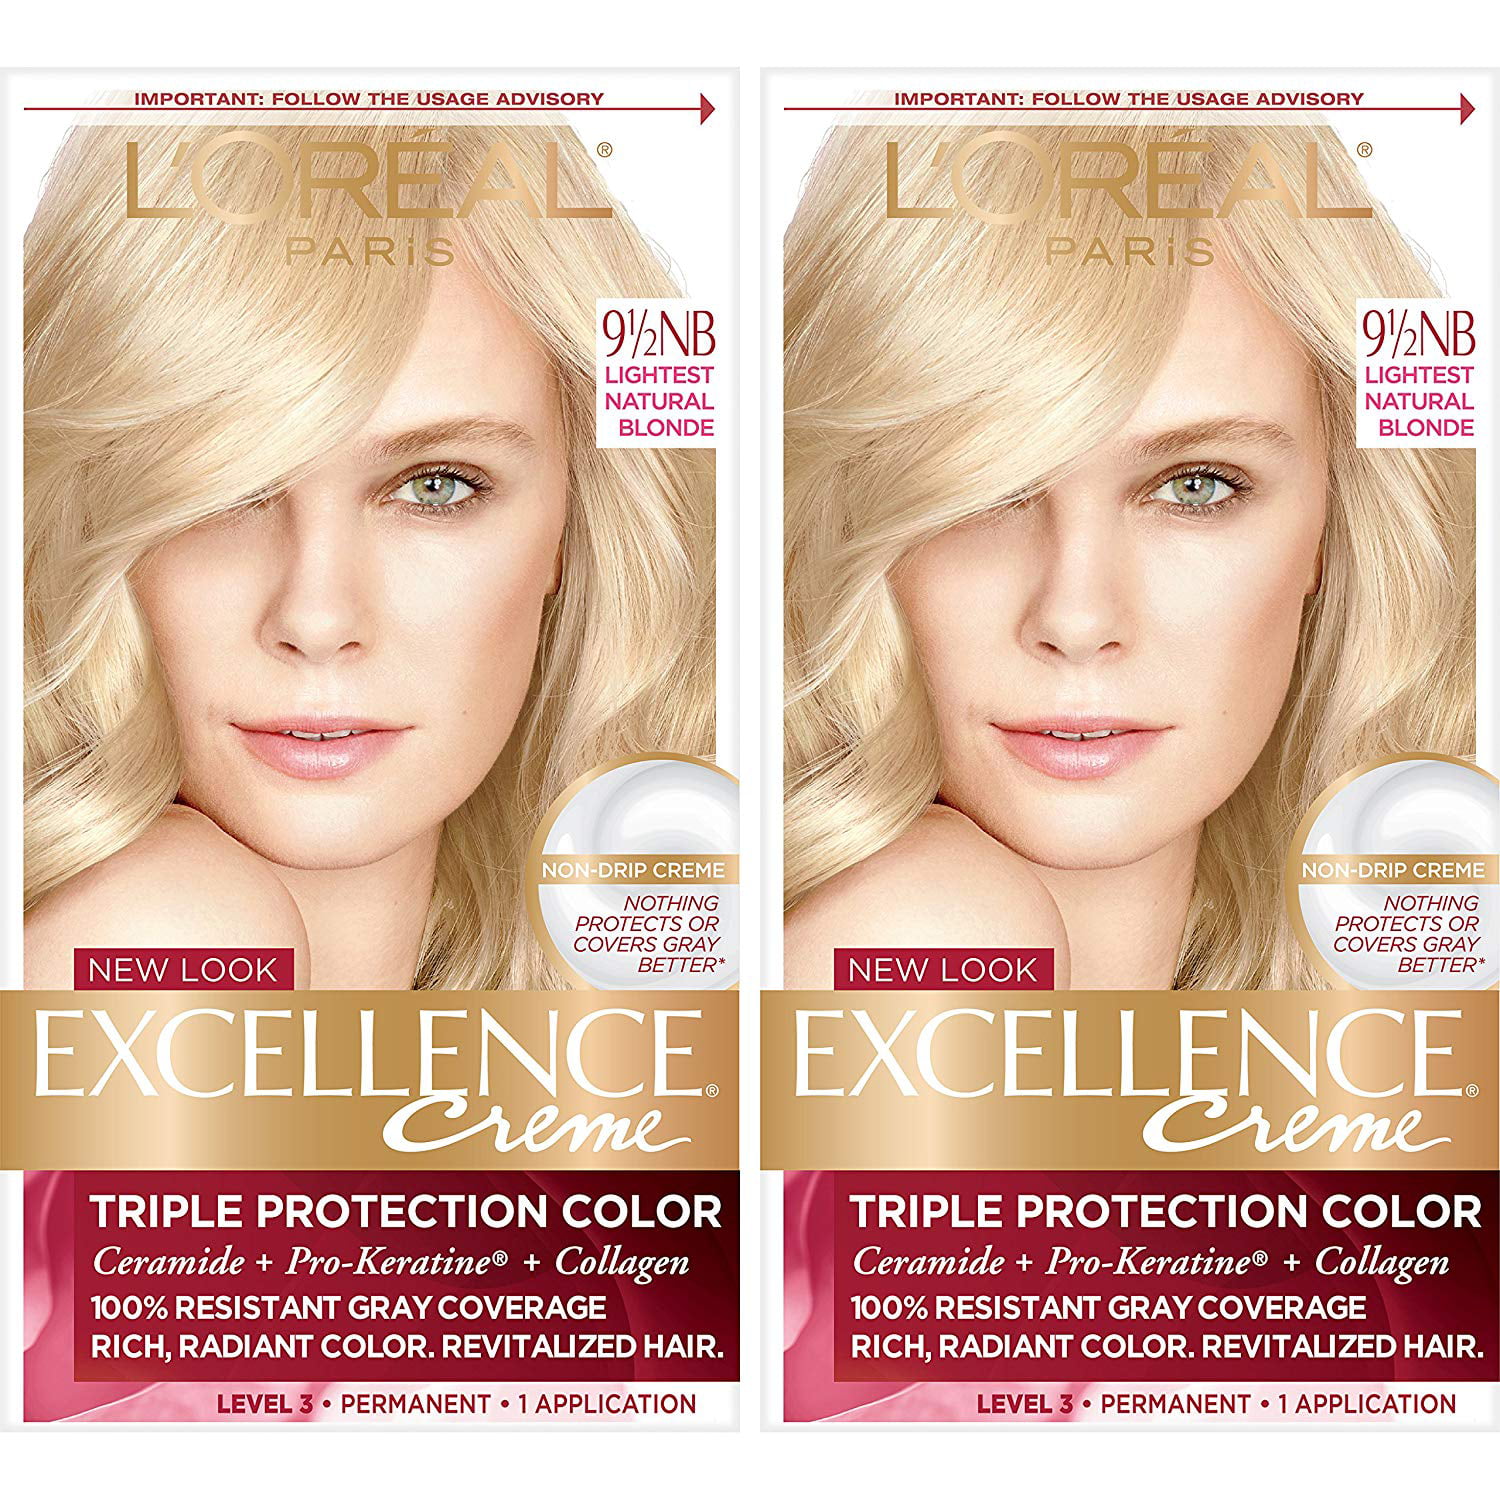 L'Oréal Paris Excellence Créme Permanent Hair Color, 9.5NB Lightest ... Natural Hair Color Dye